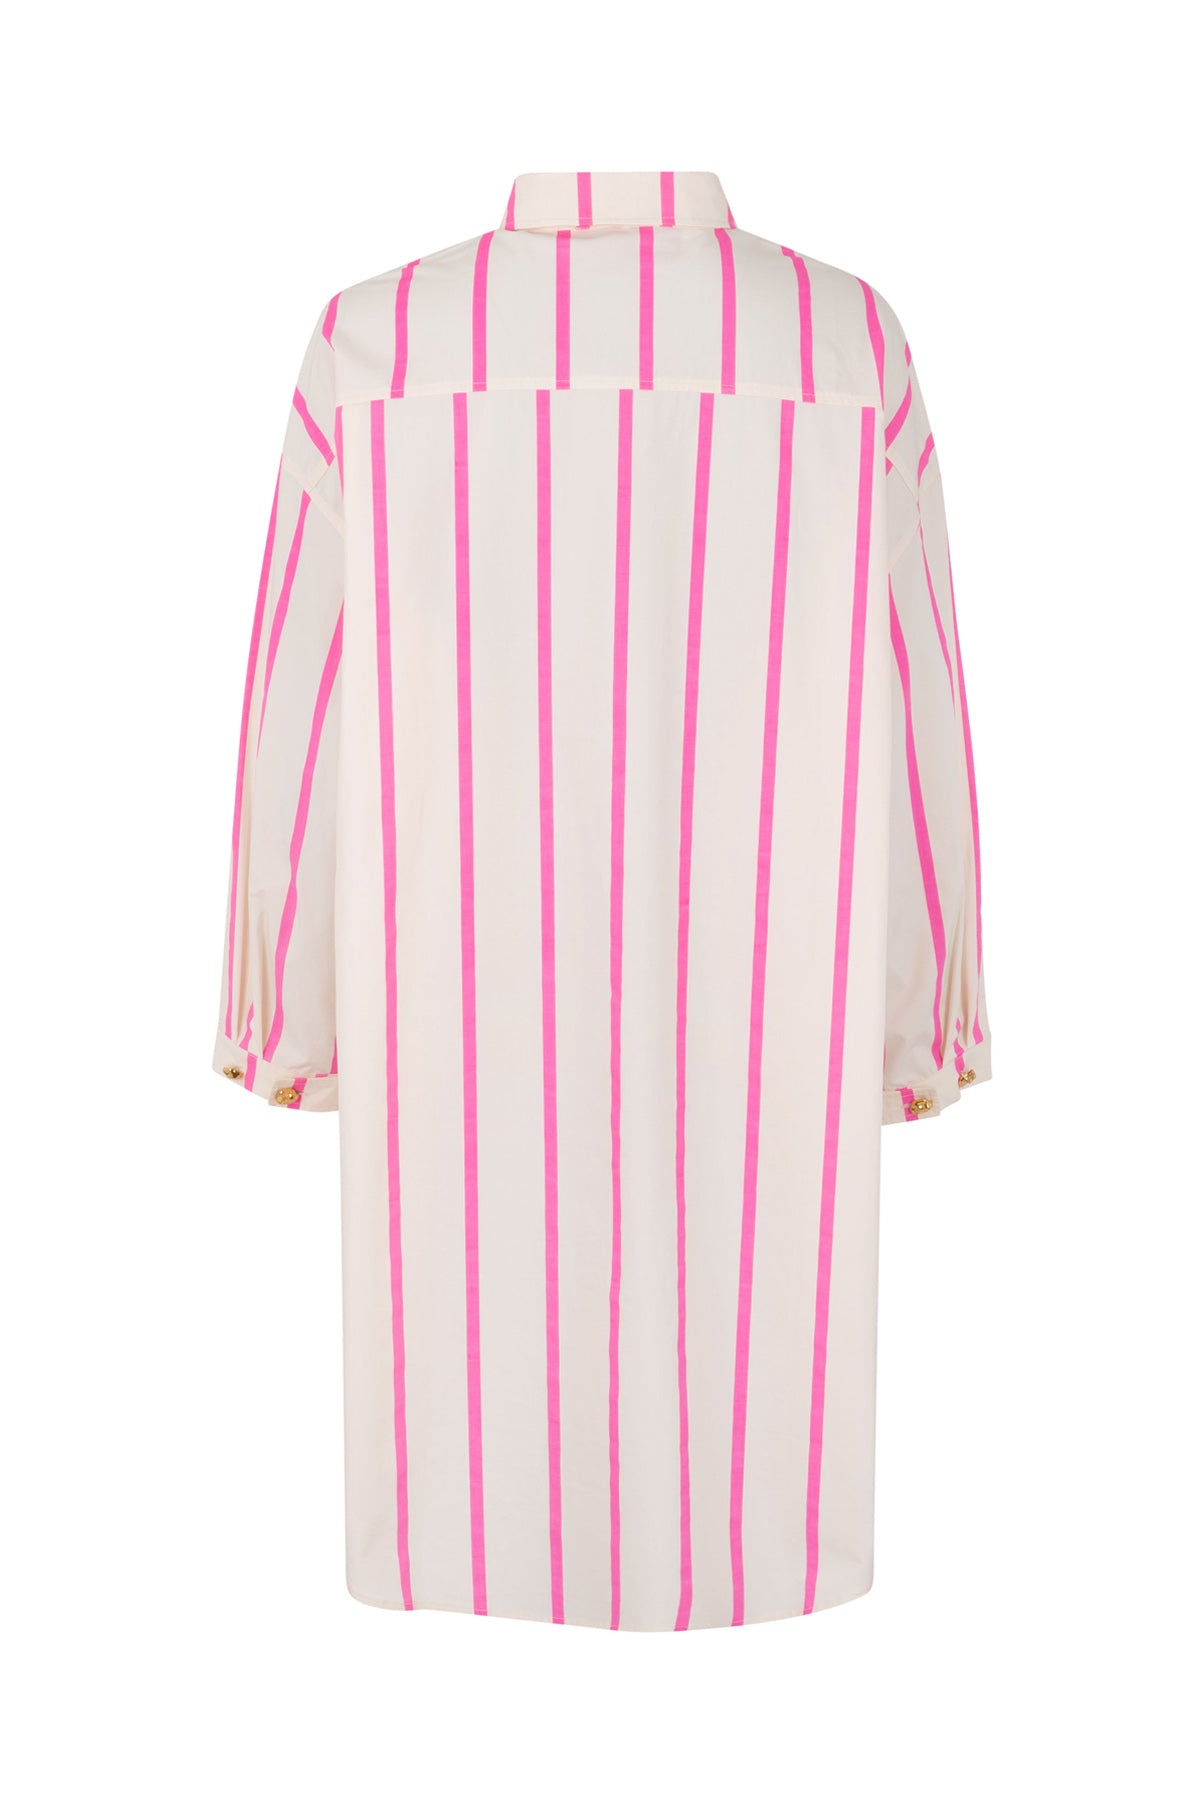 CRAS Flax Shirt Shirt 4006 Pink Stripe